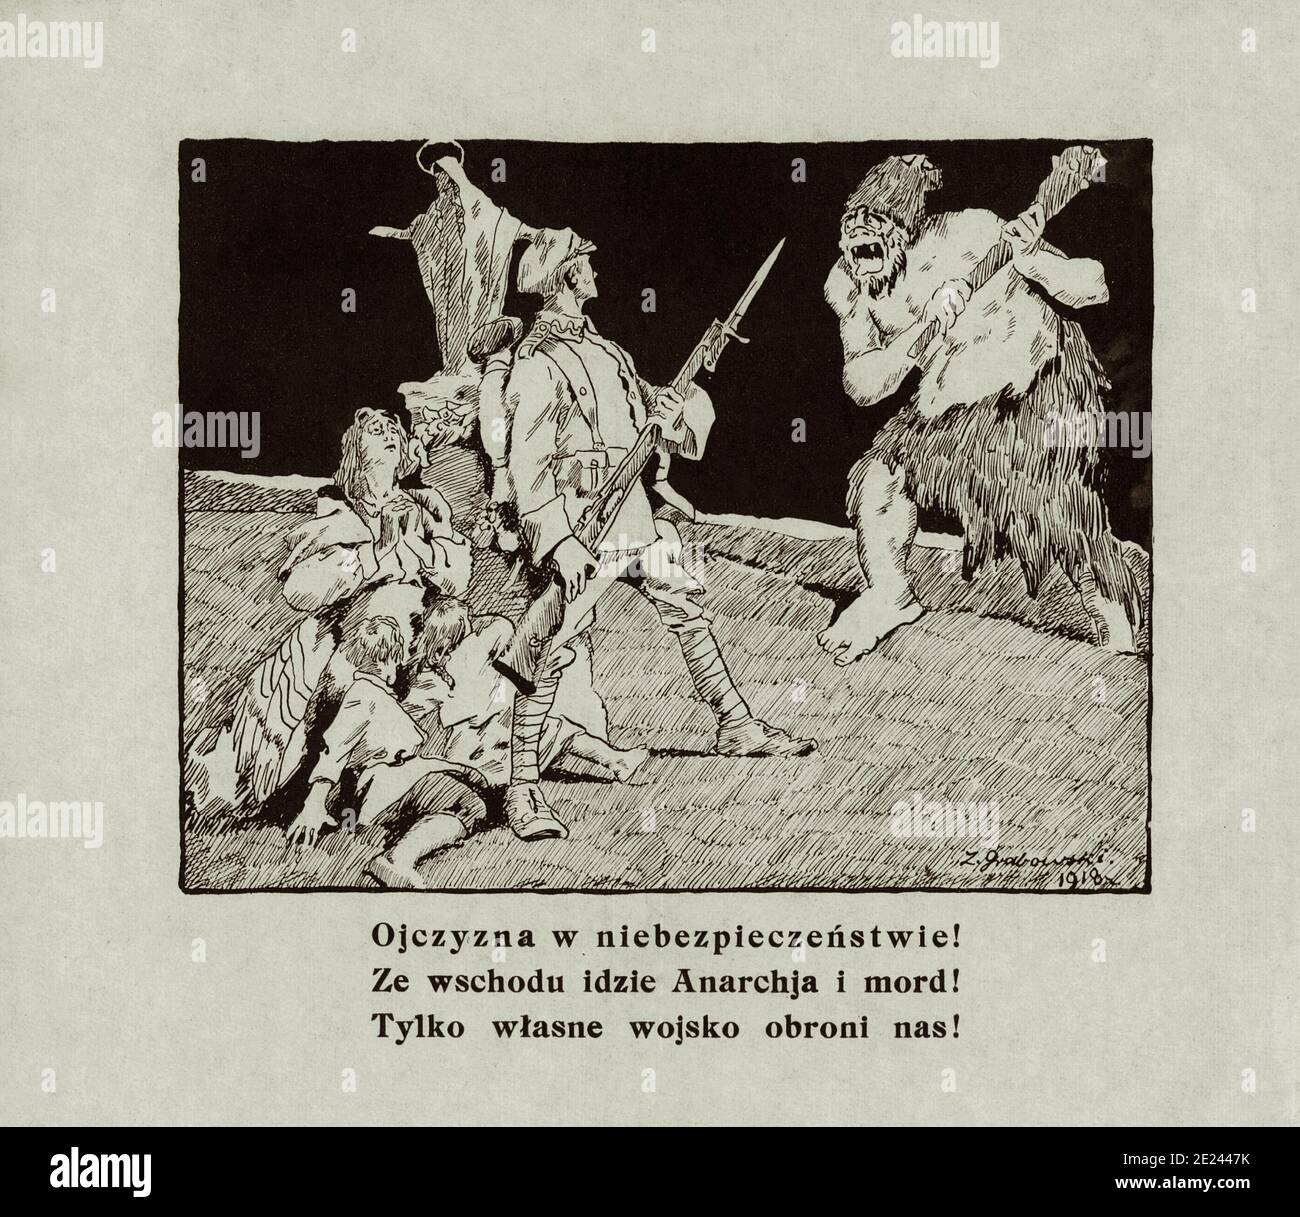 Affiche de propagande anti-bolshivik polonaise. La mère-mère est en danger ! De l'est vient l'anarchie et le meurtre! 1920 Banque D'Images